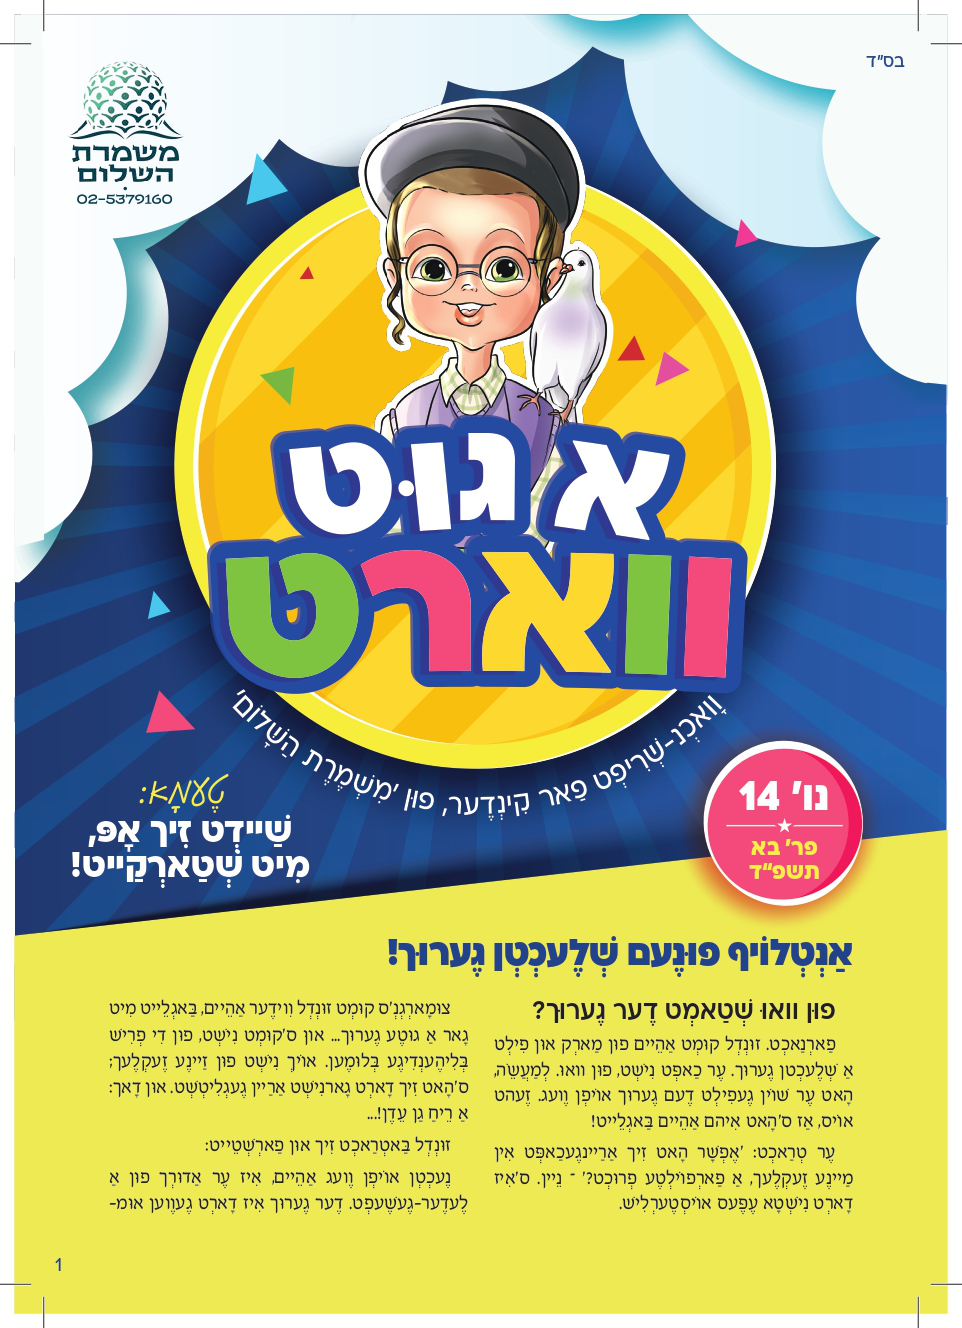 Yiddish weekly newsletter